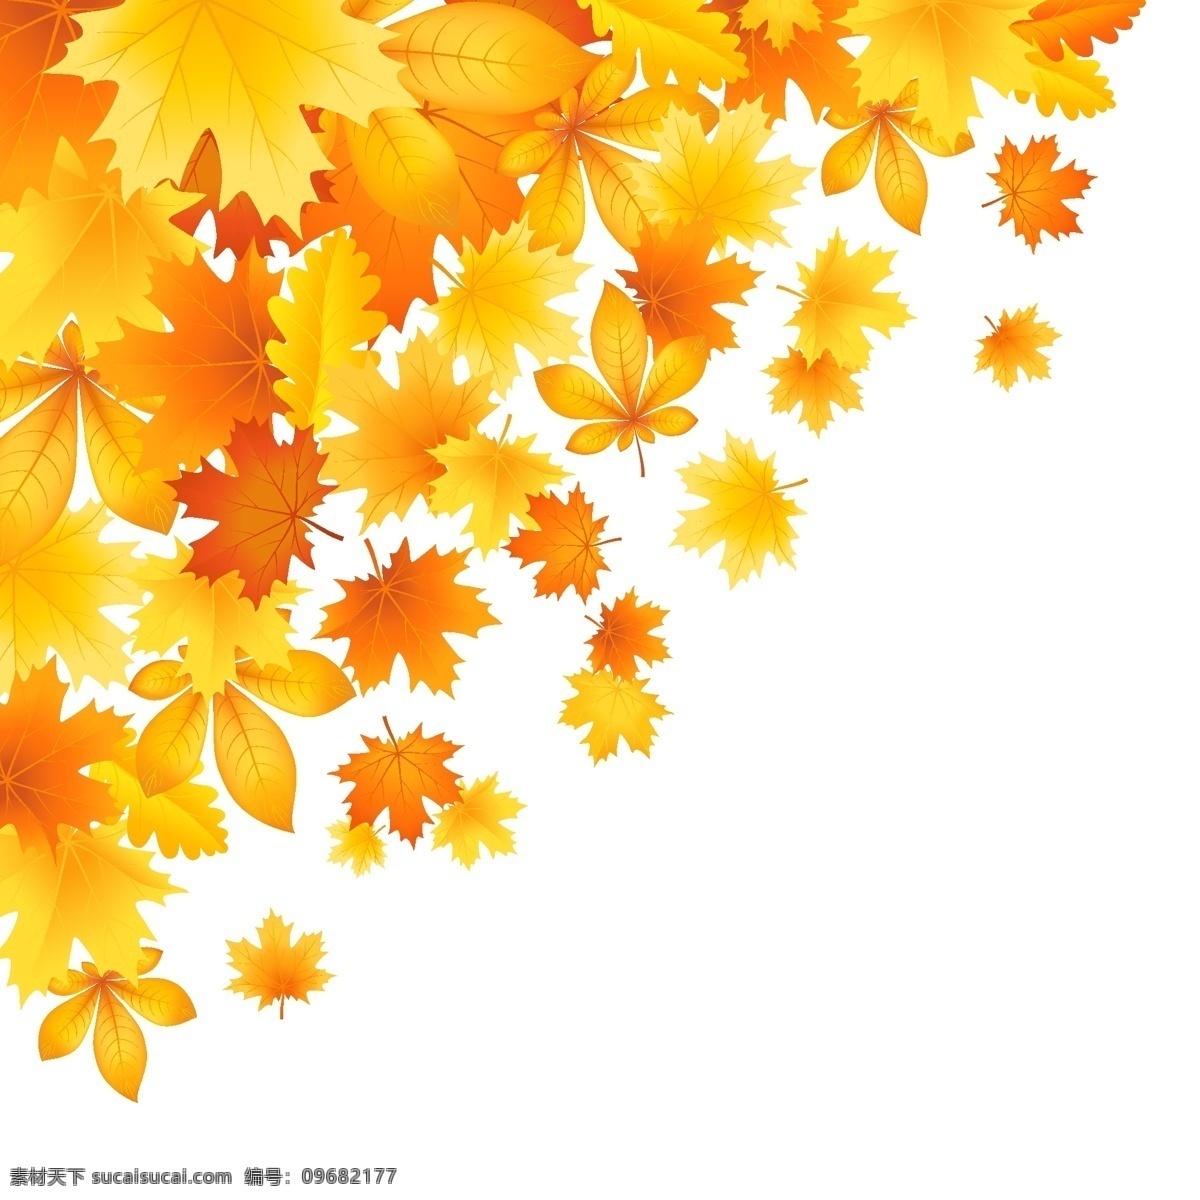 美丽 秋天 树叶 矢量 秋天的落叶 矢量植物 离开 psd秋天 矢量图 其他矢量图